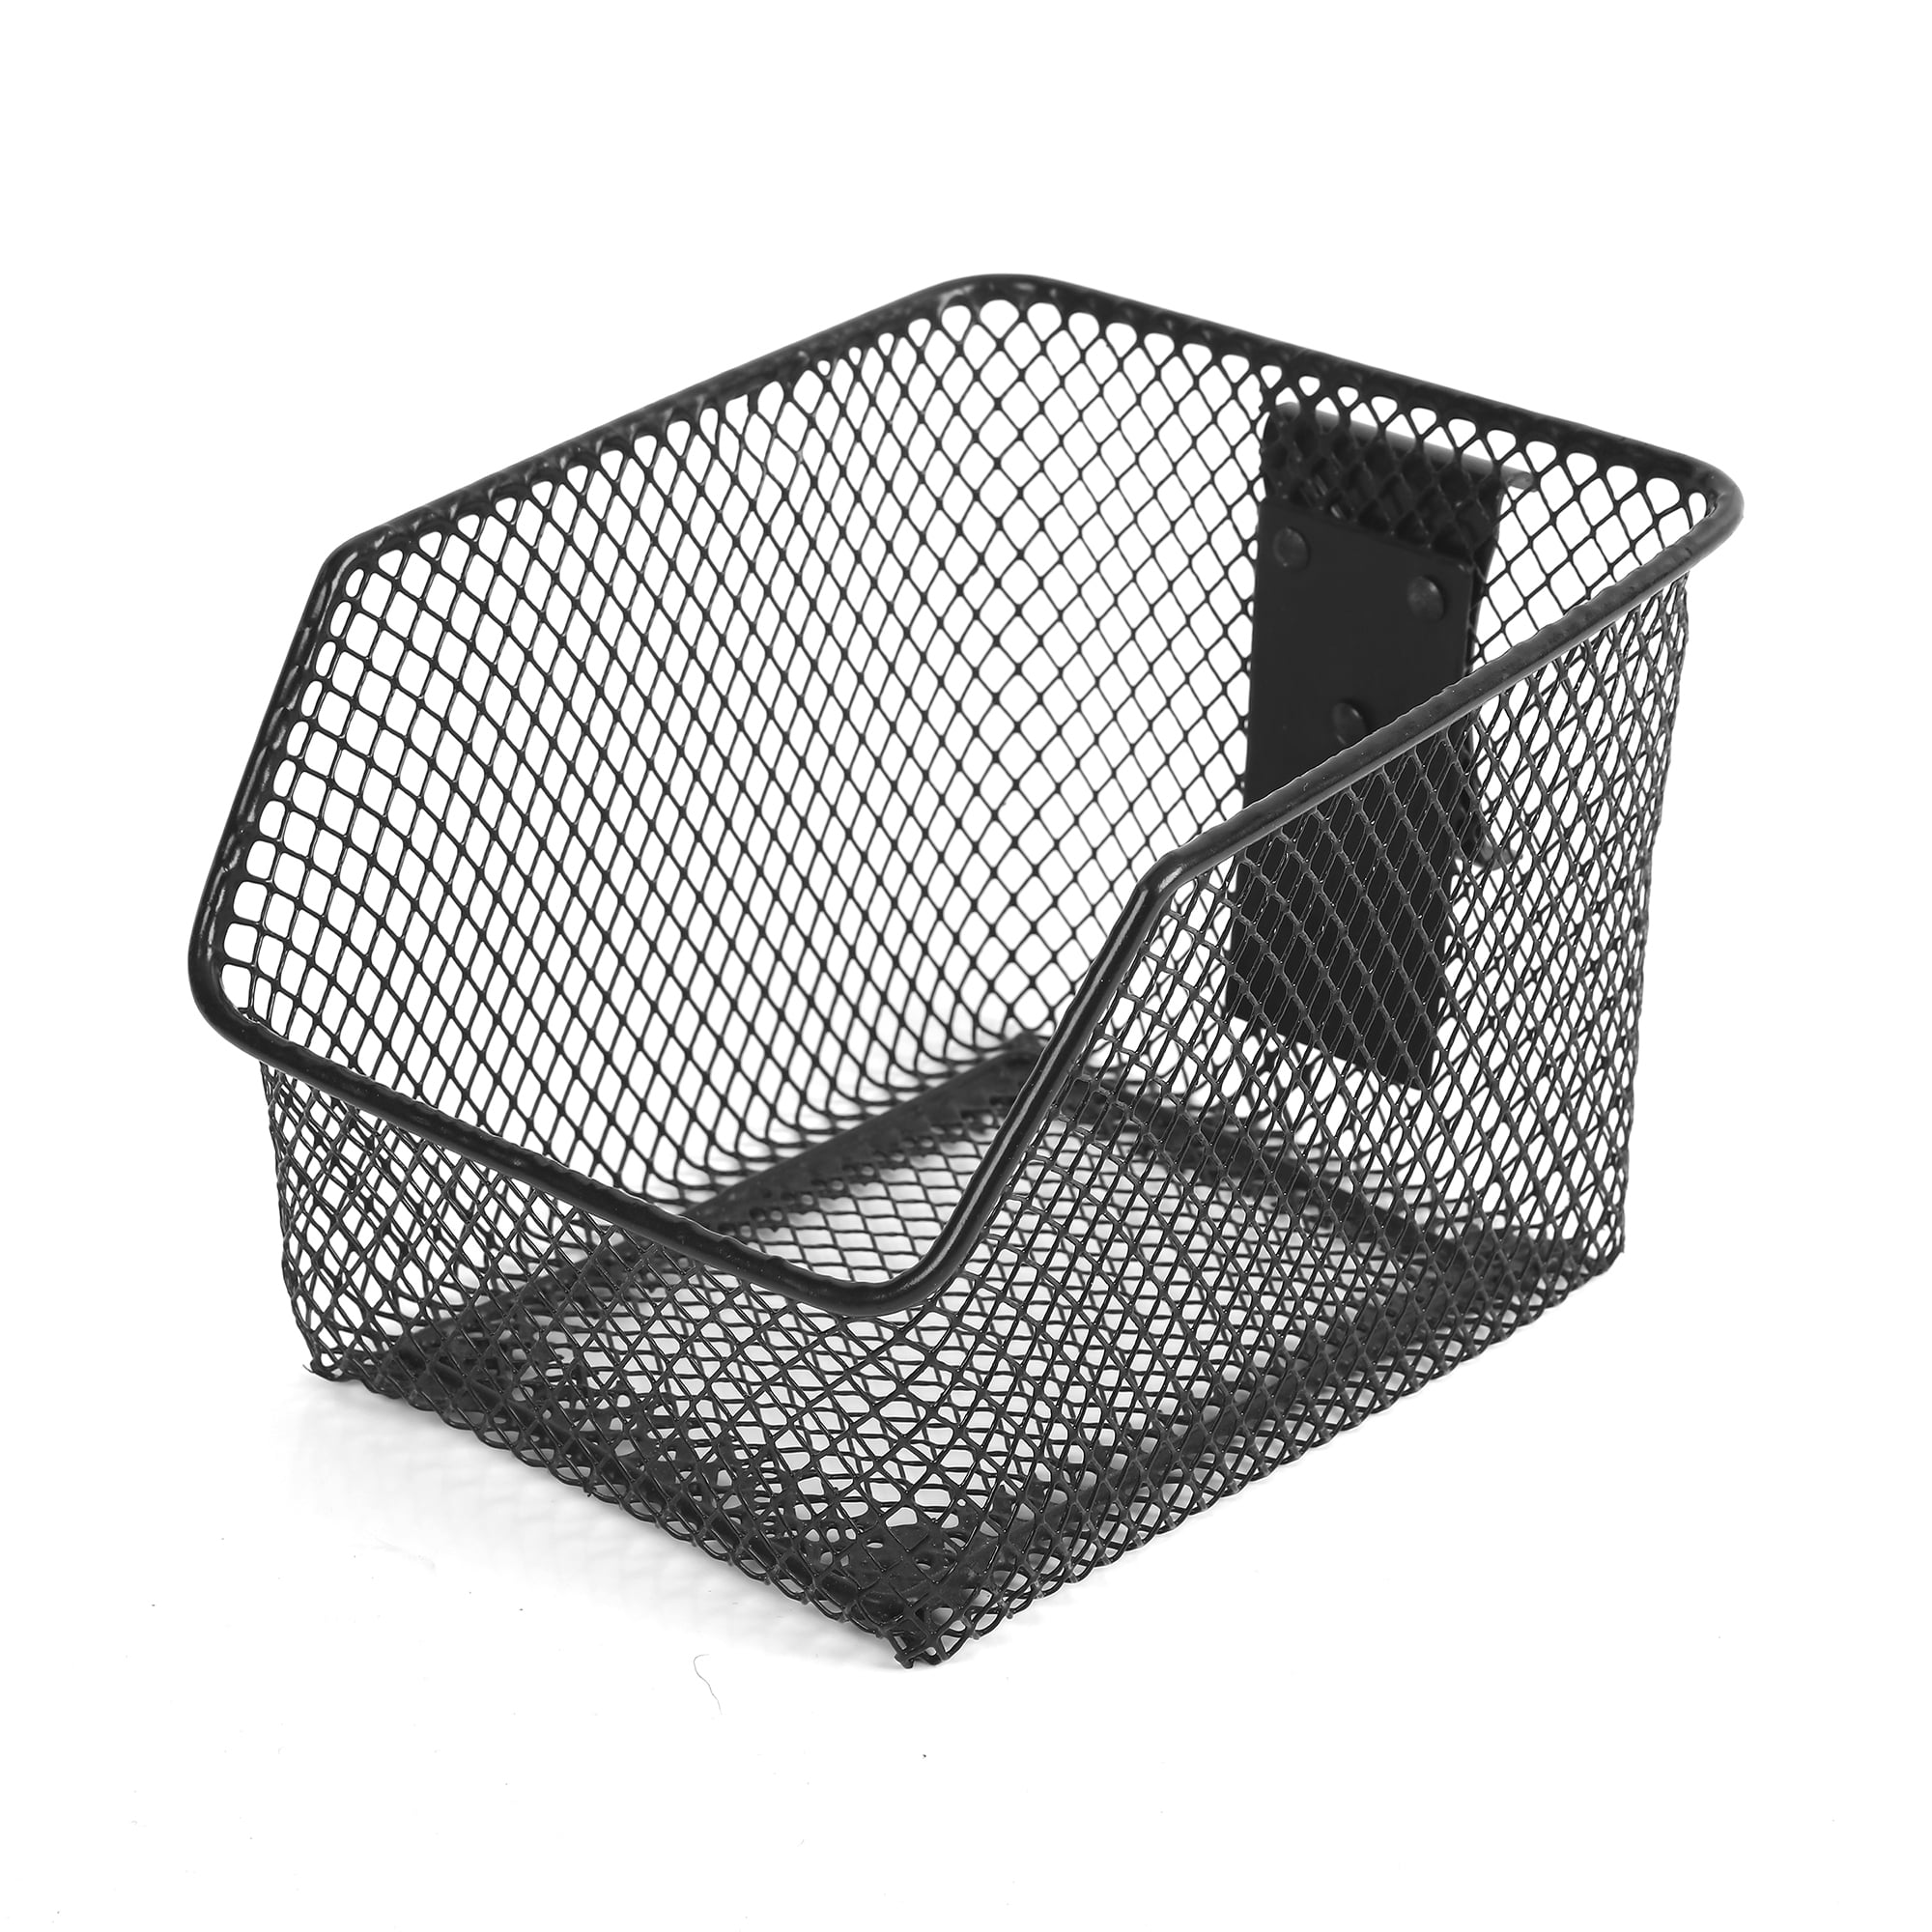 Wire E-Track Basket for Storage, 12-1/2 x 6-1/2 x 6-3/4